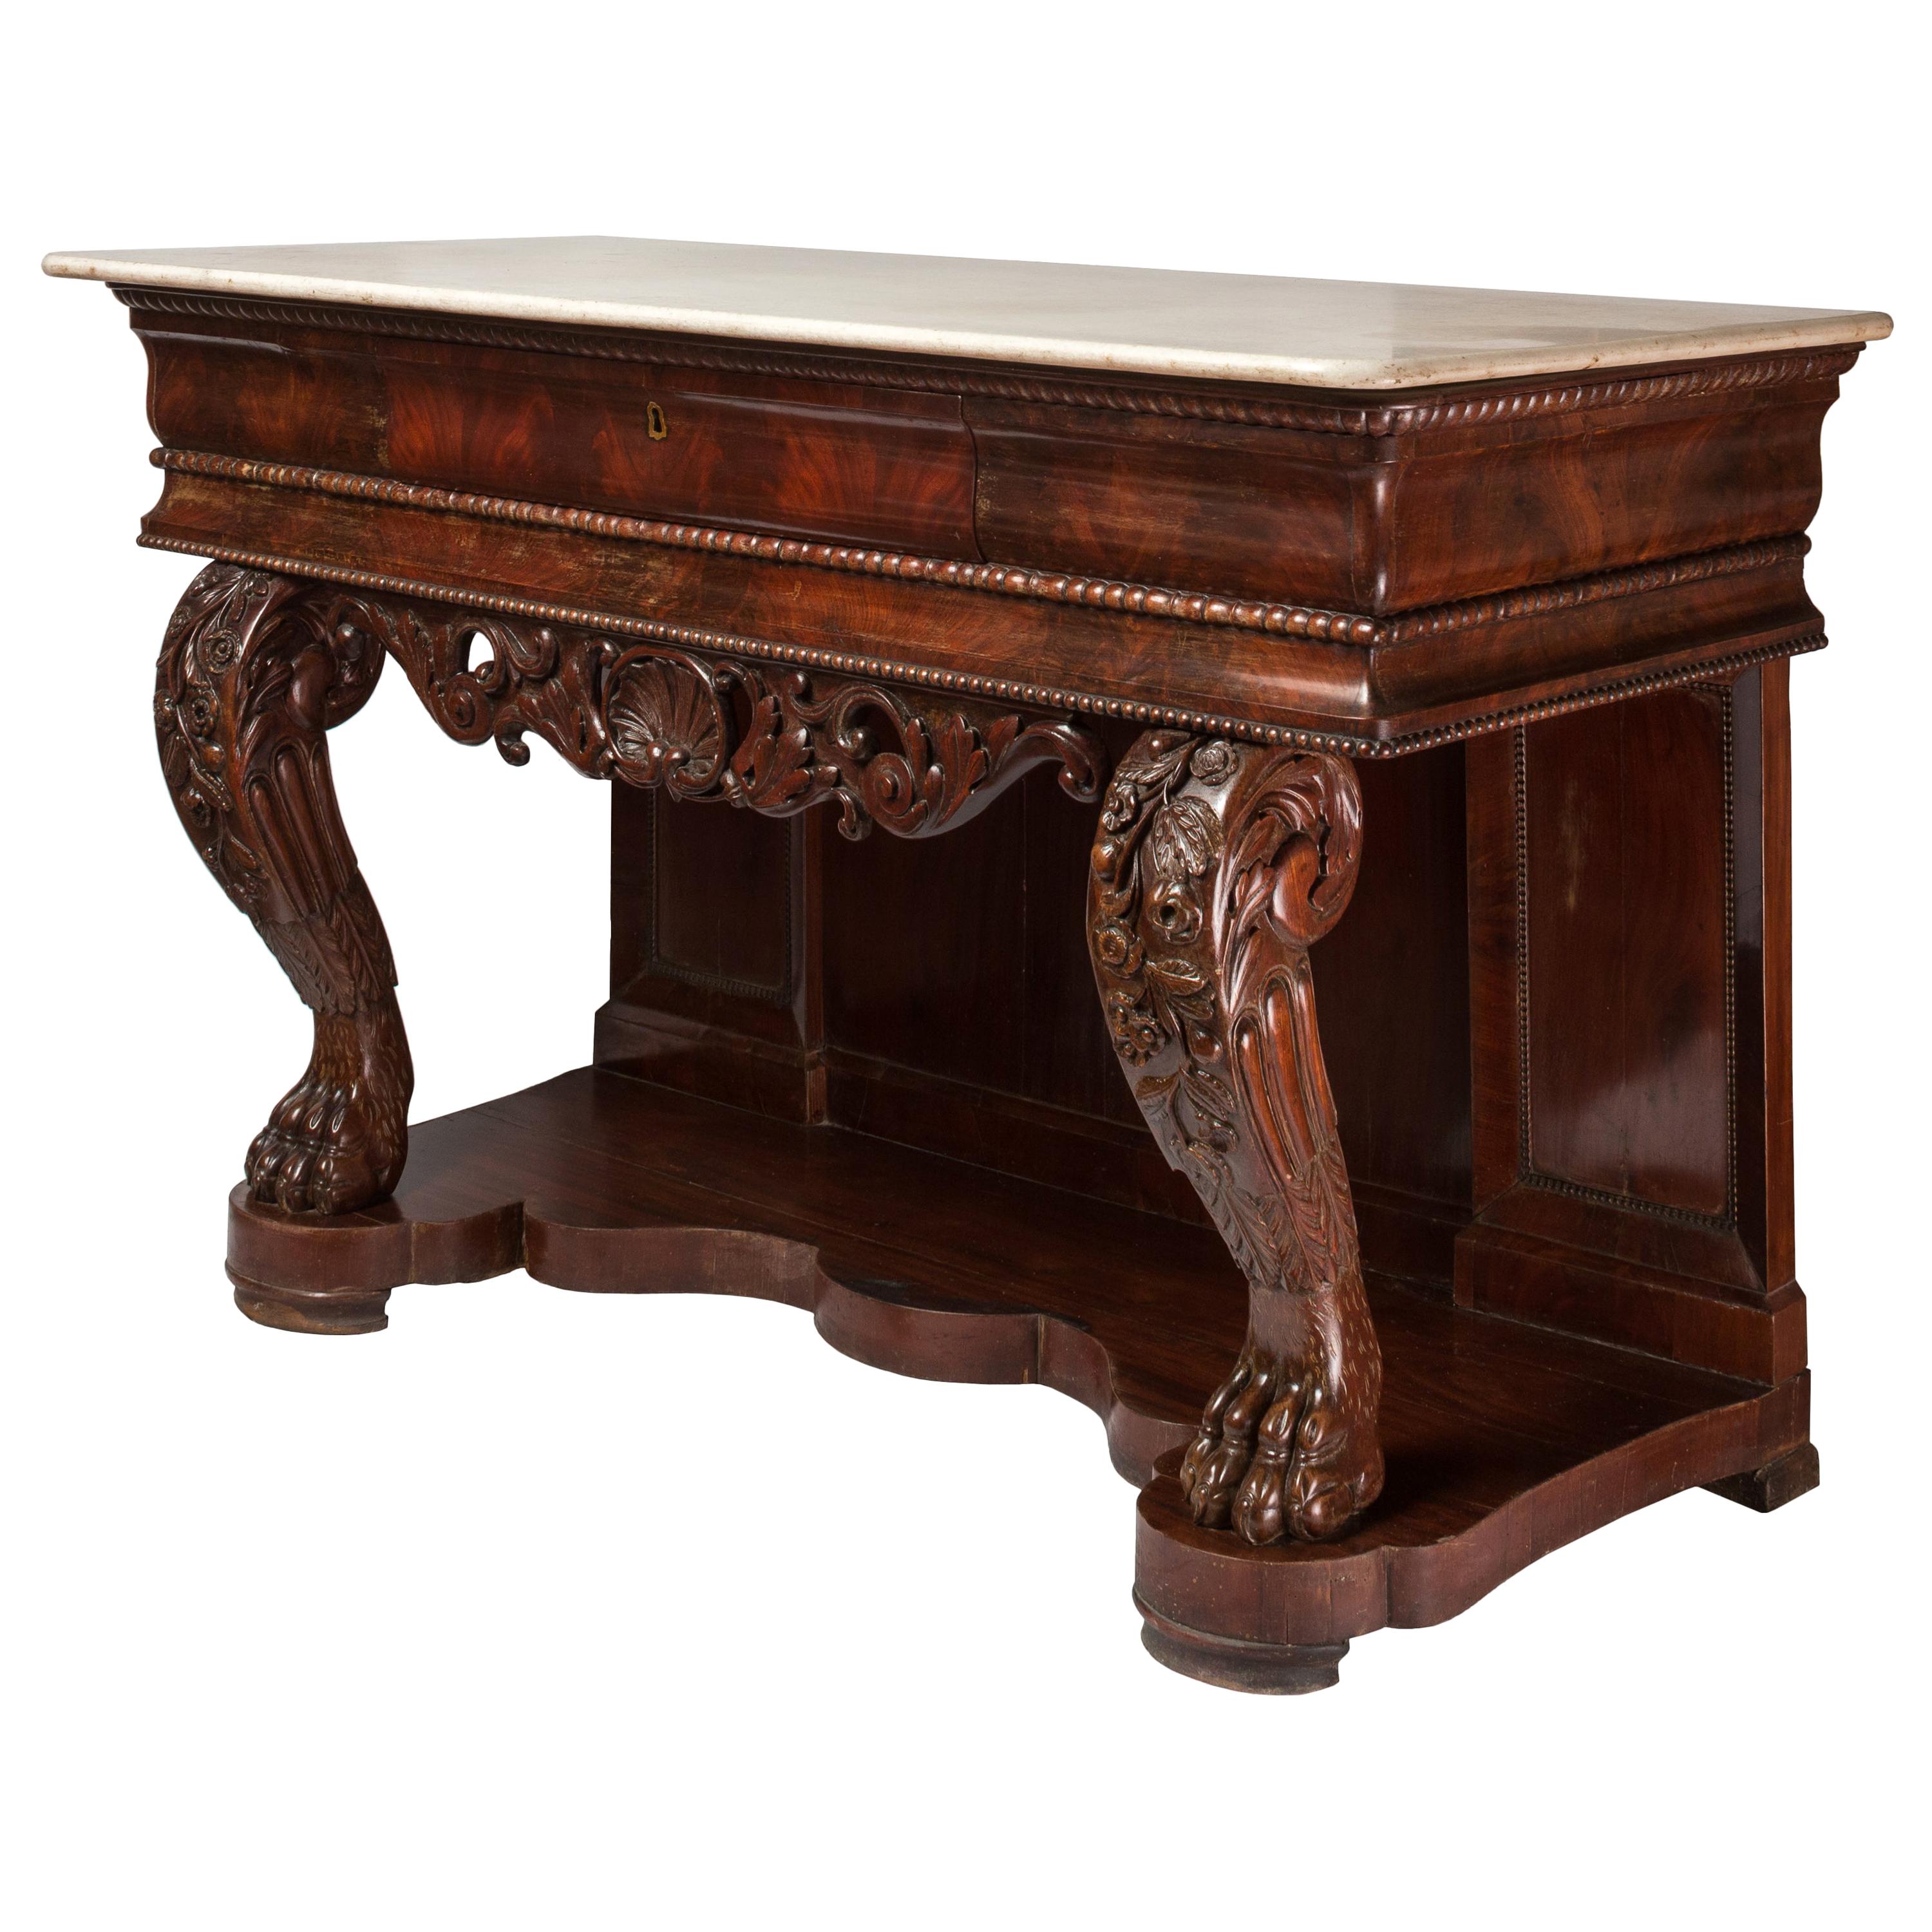 Table console de style Charles X du 19ème siècle, plateau en marbre, détails sculptés en vente